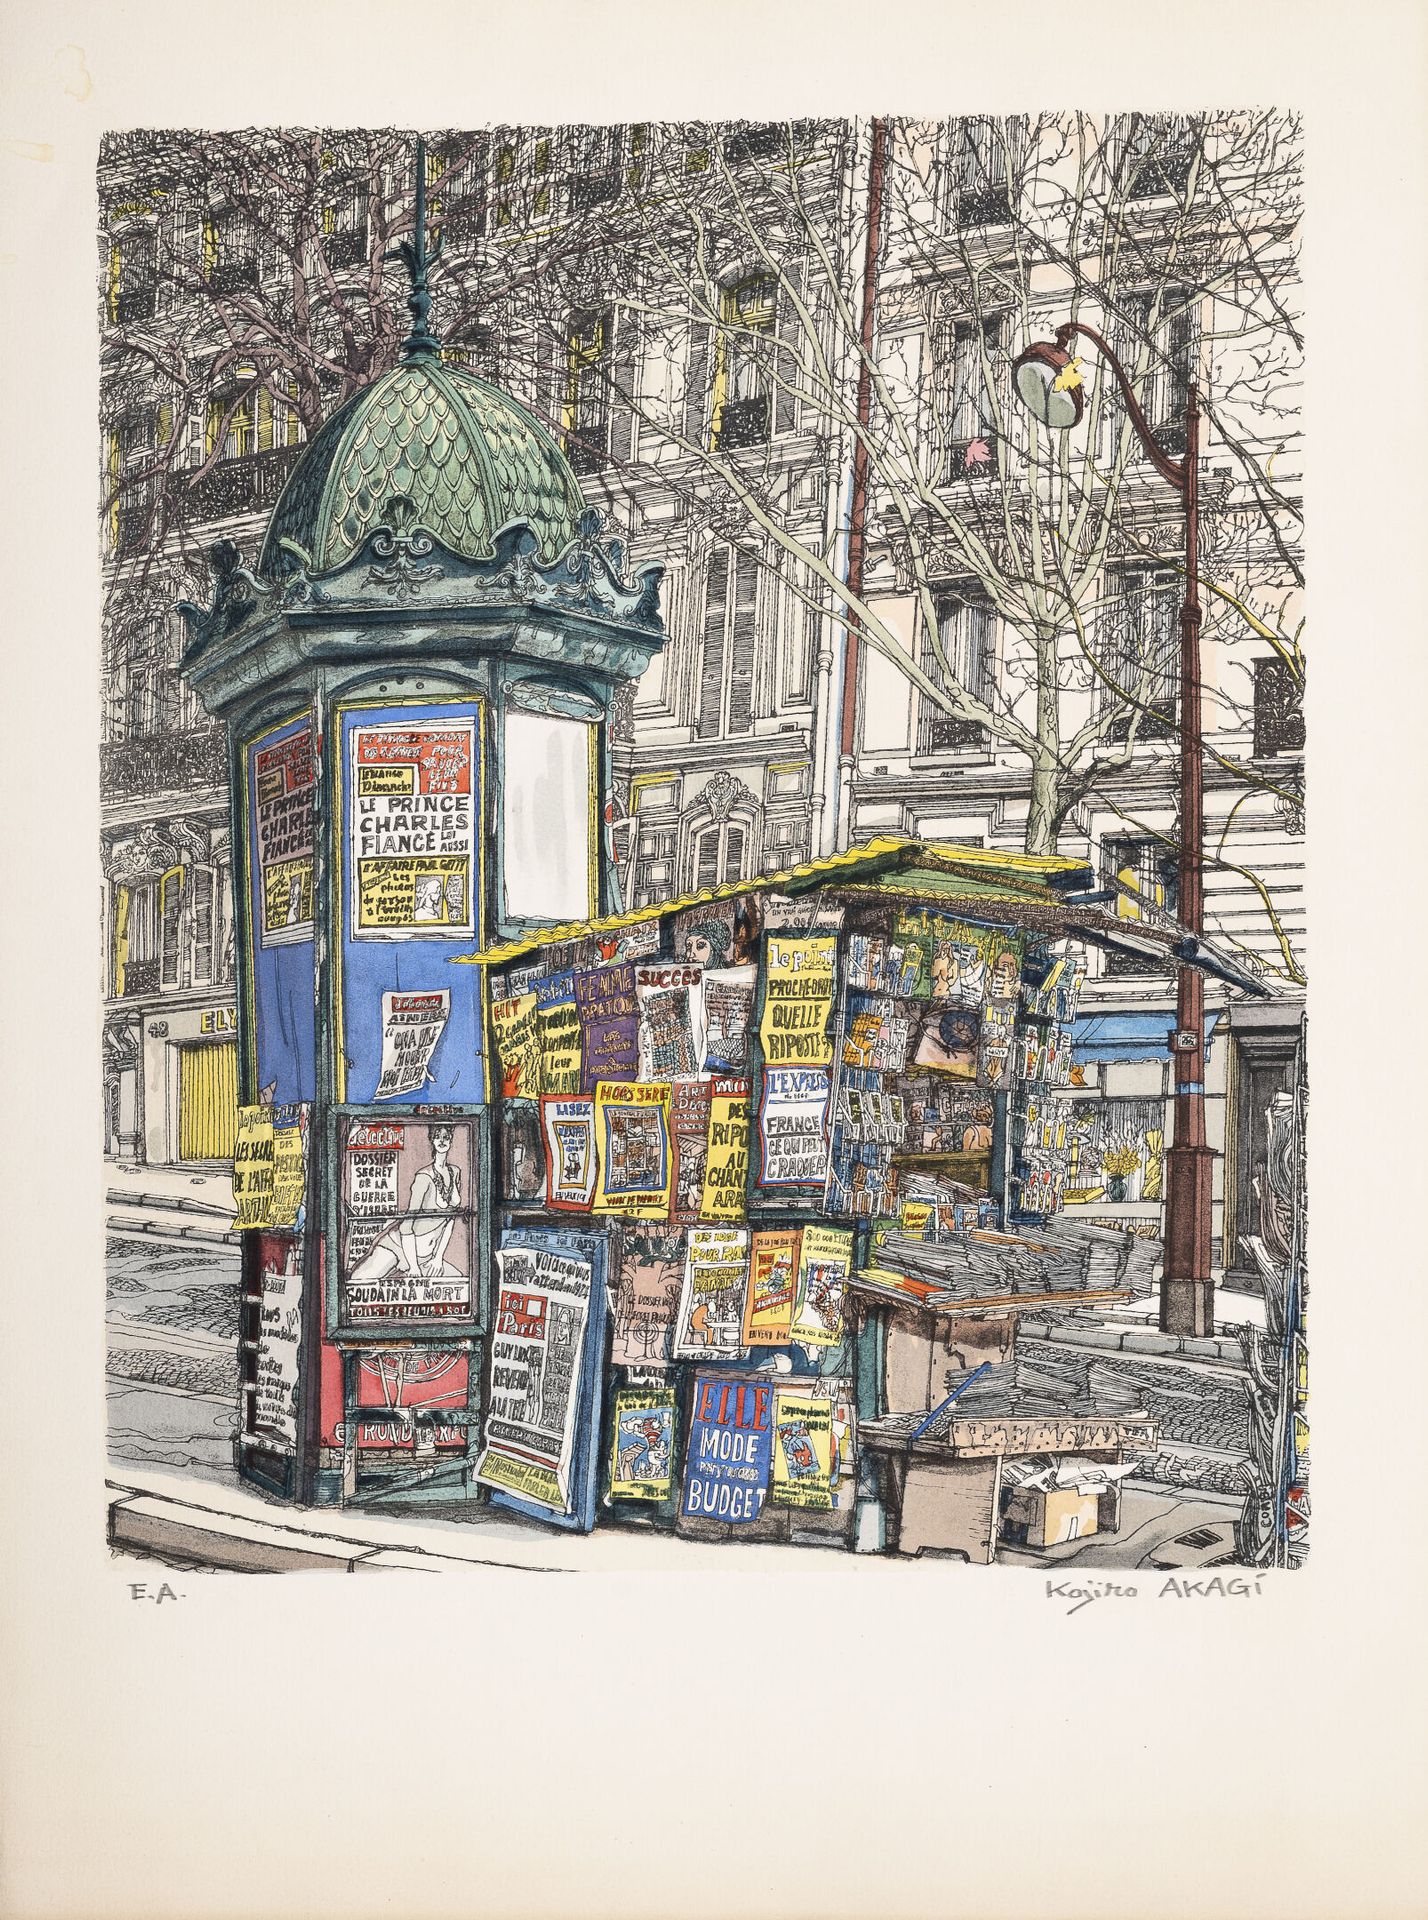 KOJIRO AKAGI (1934) 巴黎的报亭。

纸上彩色平版画。

右下角有艺术家的签名证明。

61 x 45厘米。

弯曲，有狐臭和污点。

附上。&hellip;